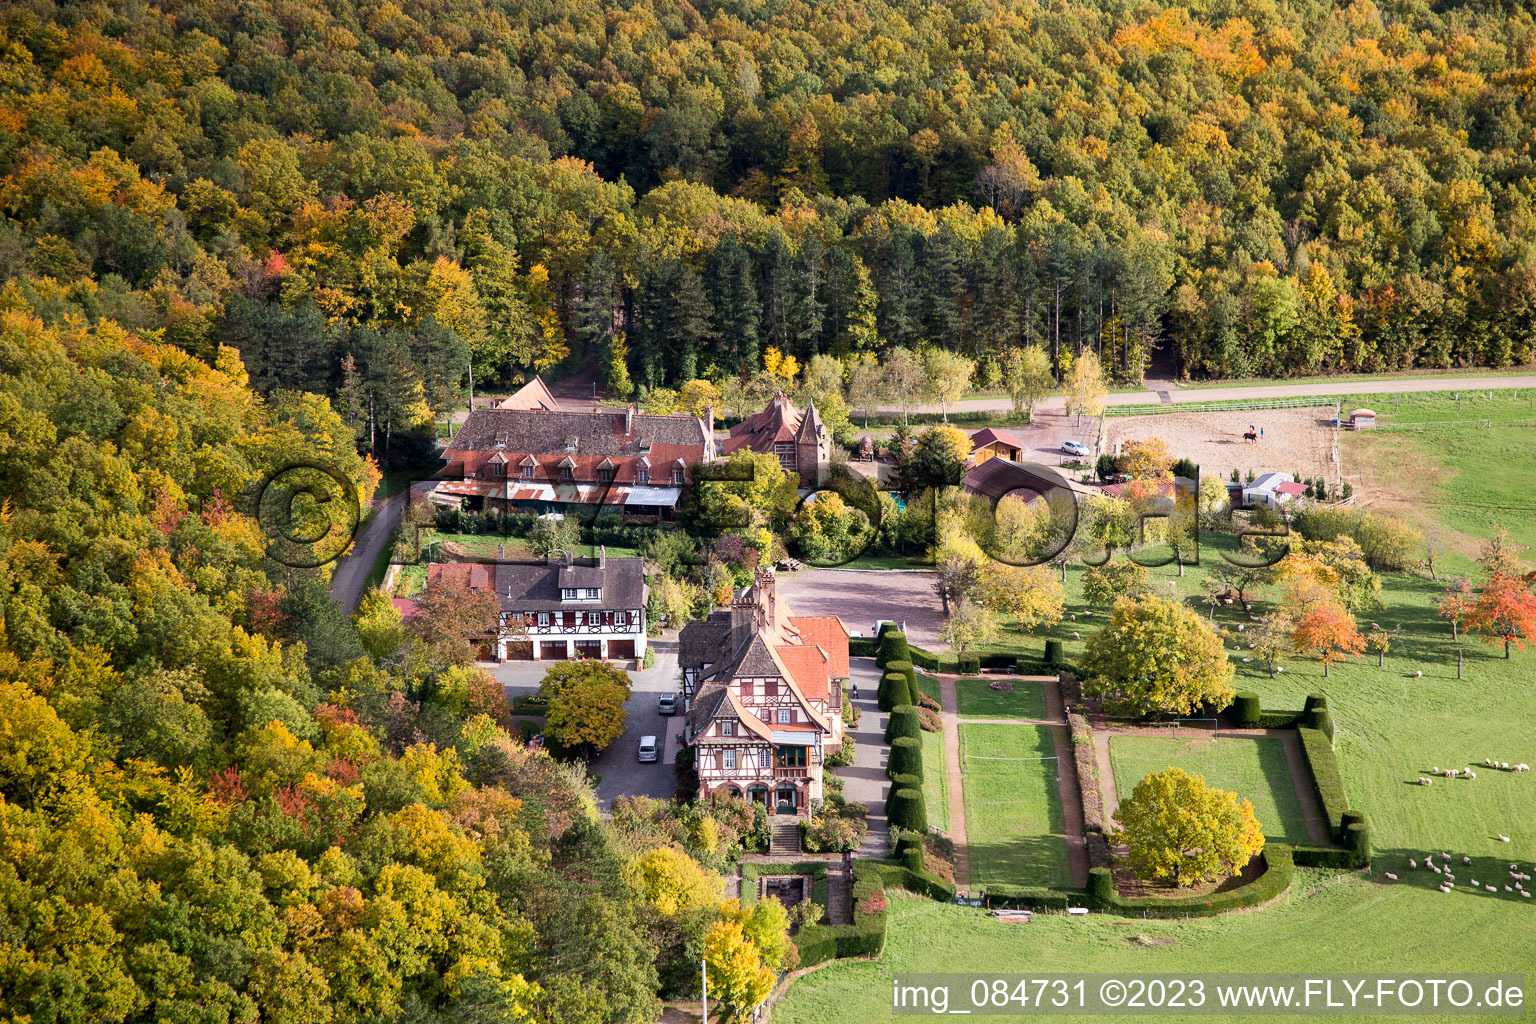 Luftaufnahme von Niederbronn-les-Bains, Centre rencontre Albert Schweitzer im Bundesland Bas-Rhin, Frankreich